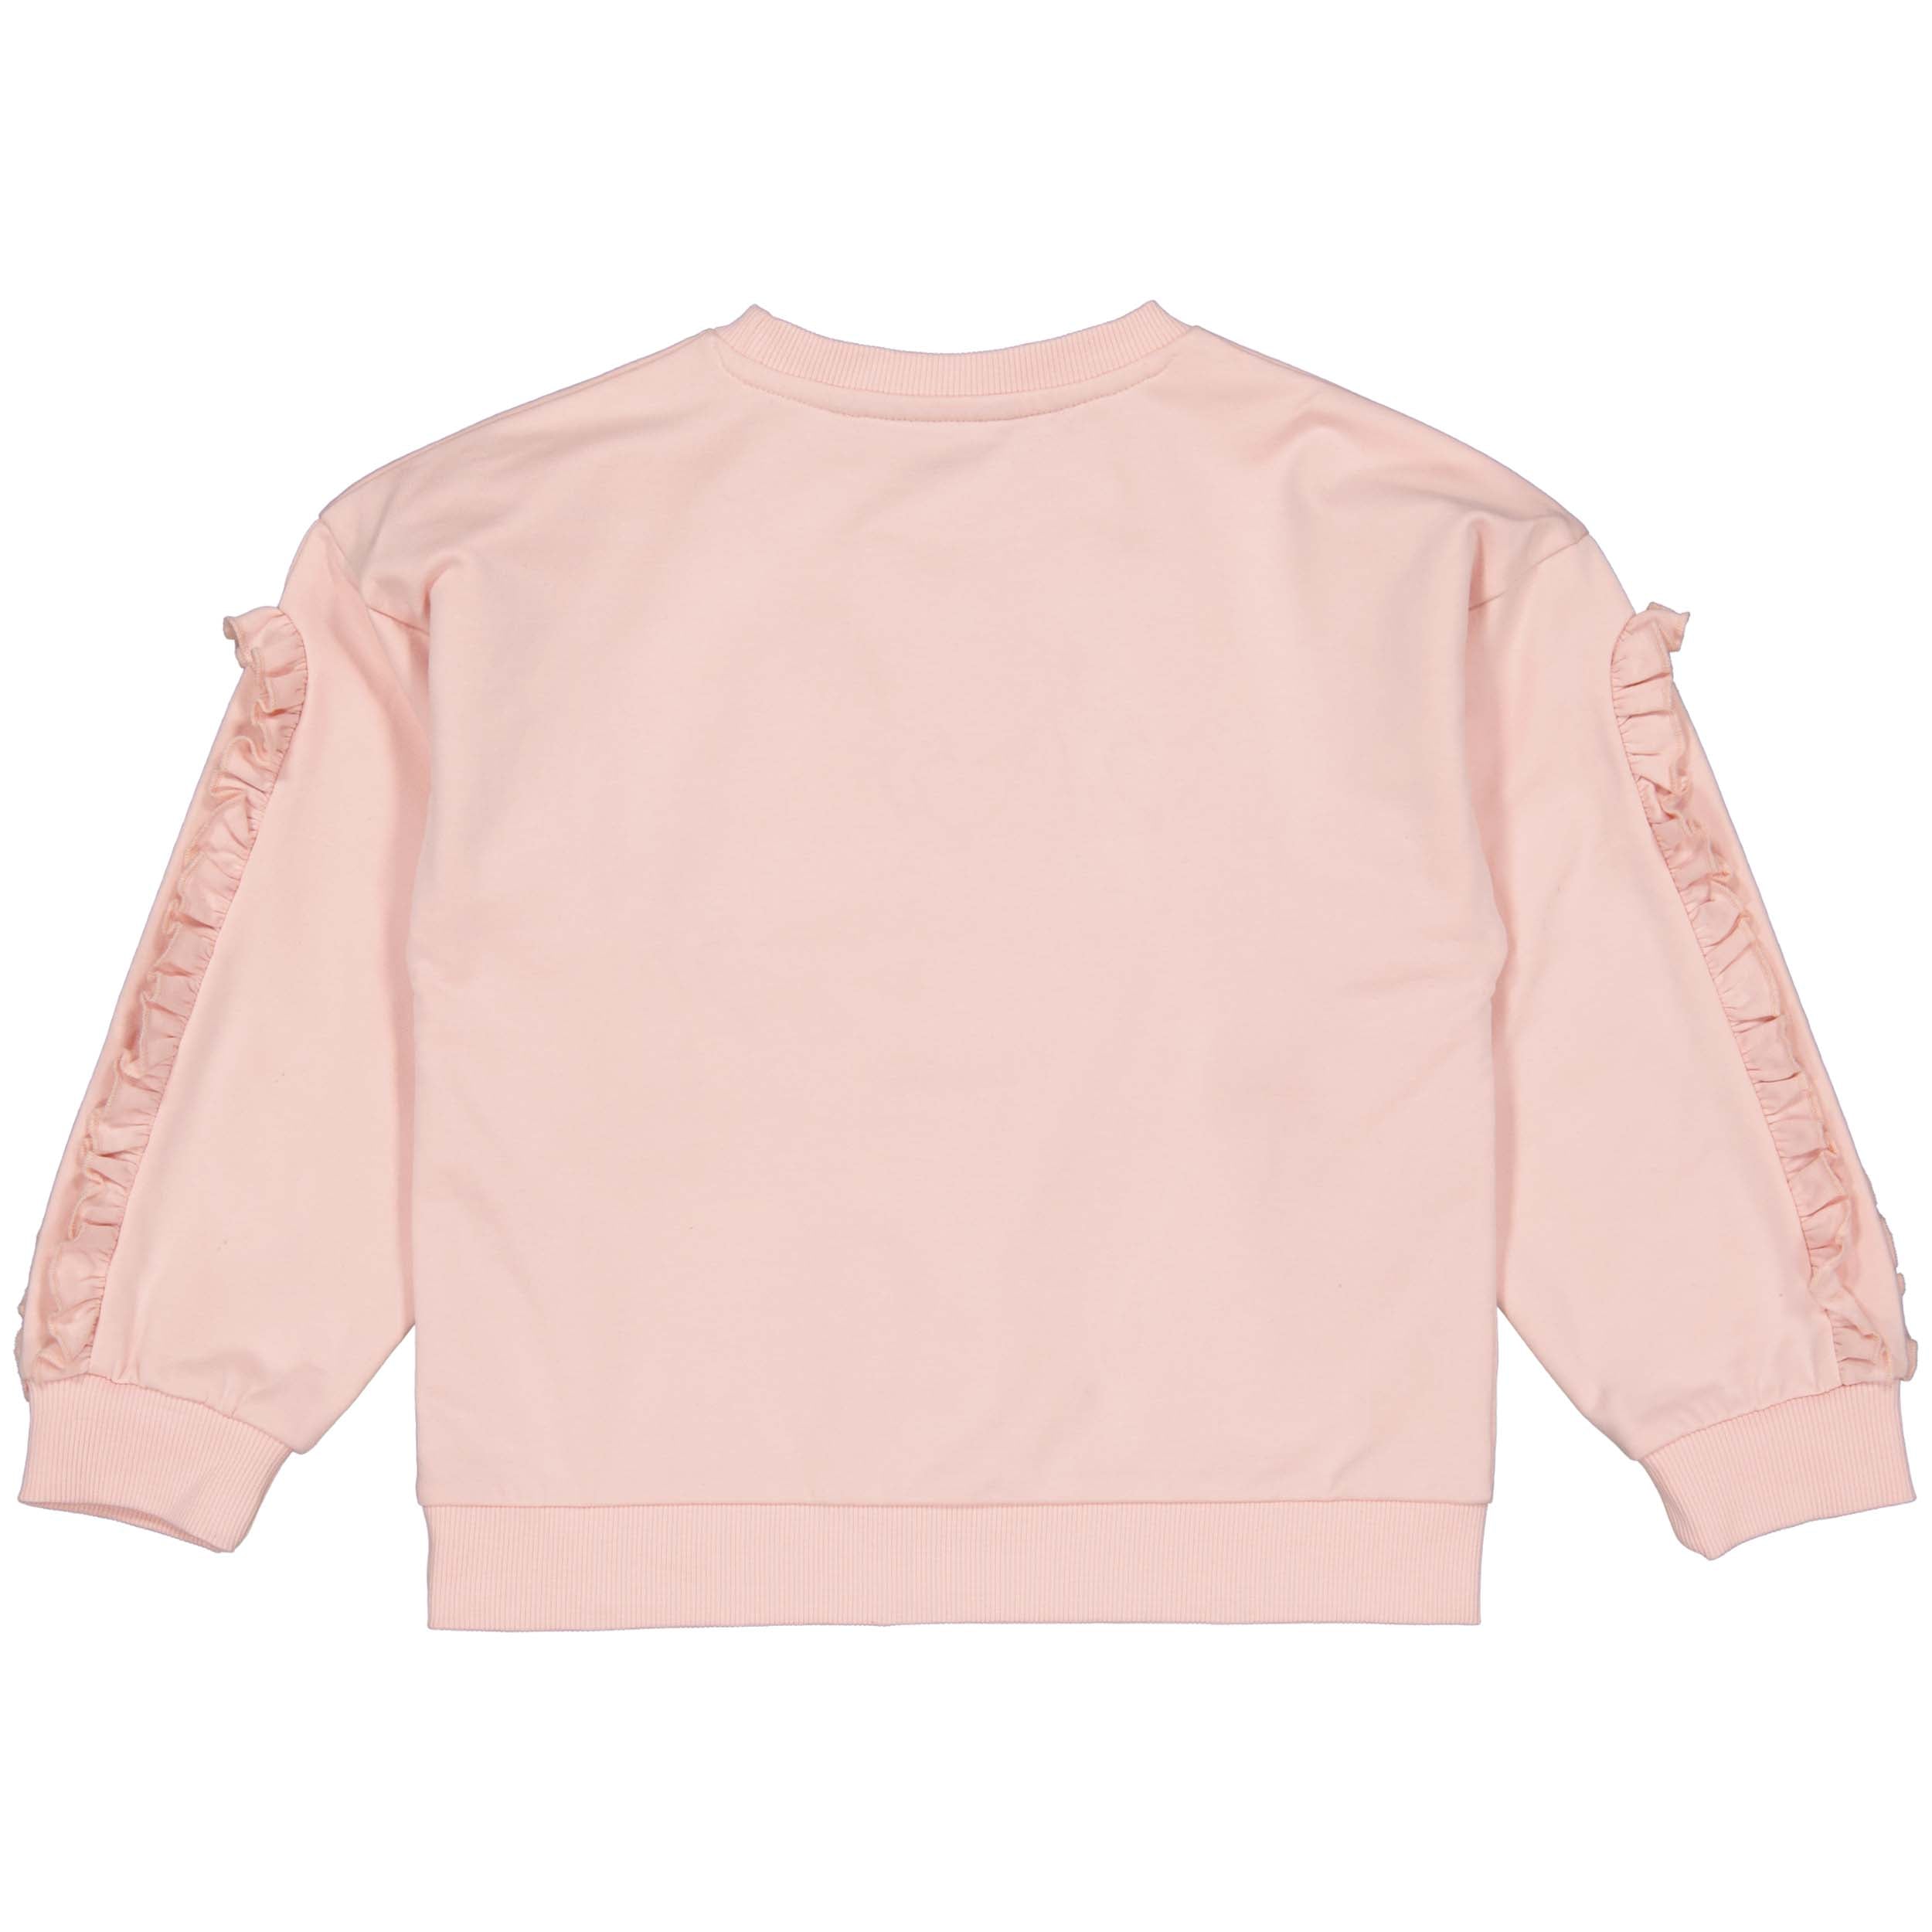 Meisjes Sweater ALUNAQW231 van Quapi in de kleur Pink Light in maat 134-140.